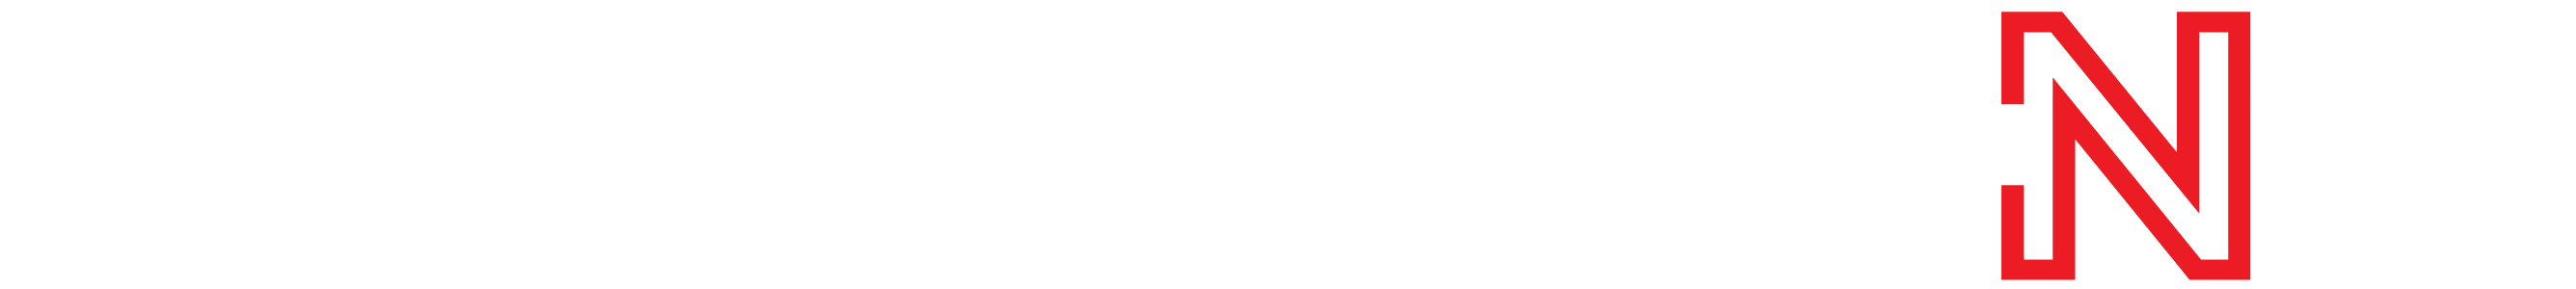 Cencal CNC Logo